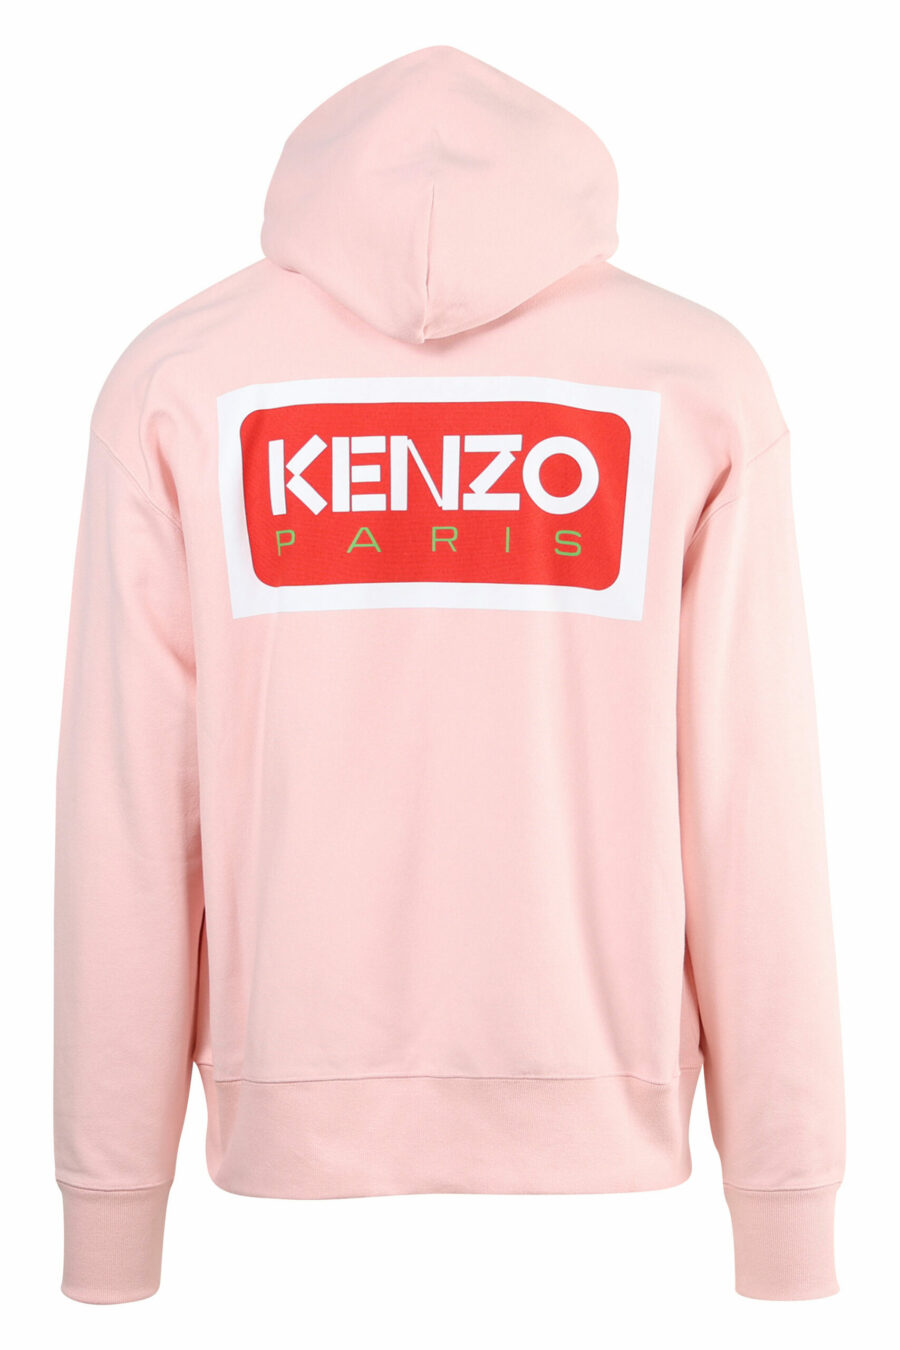 Camisola com capuz cor-de-rosa com o maxilogo "kenzo paris" nas costas - 3612230537439 1 scaled